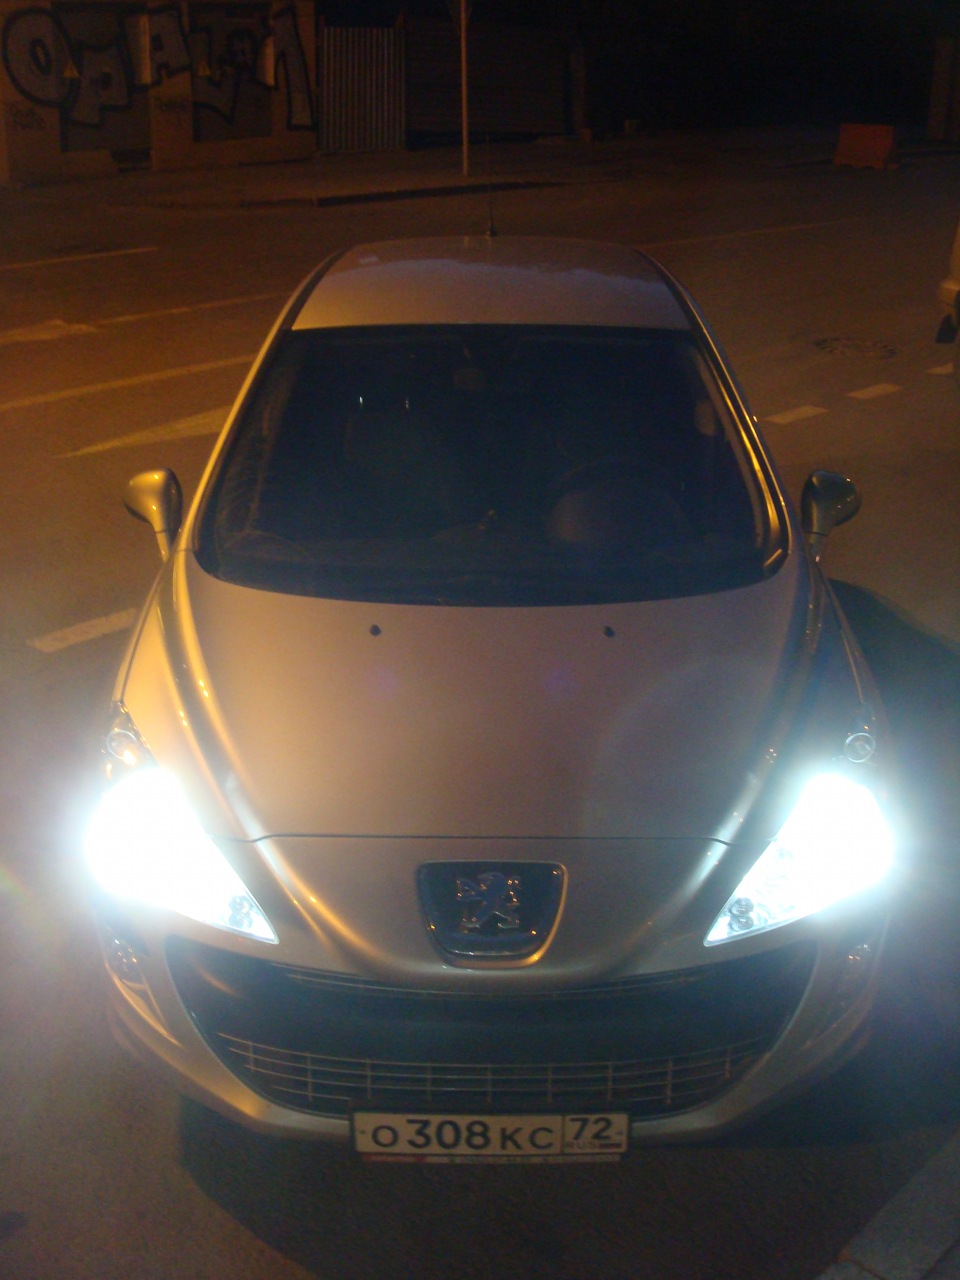 Ксенон пежо. Peugeot 308 ксенон. Peugeot 308 2012 Xenon Light. Пежо 308 2012 ксенон линза. Японский ксенон Peugeot 308.